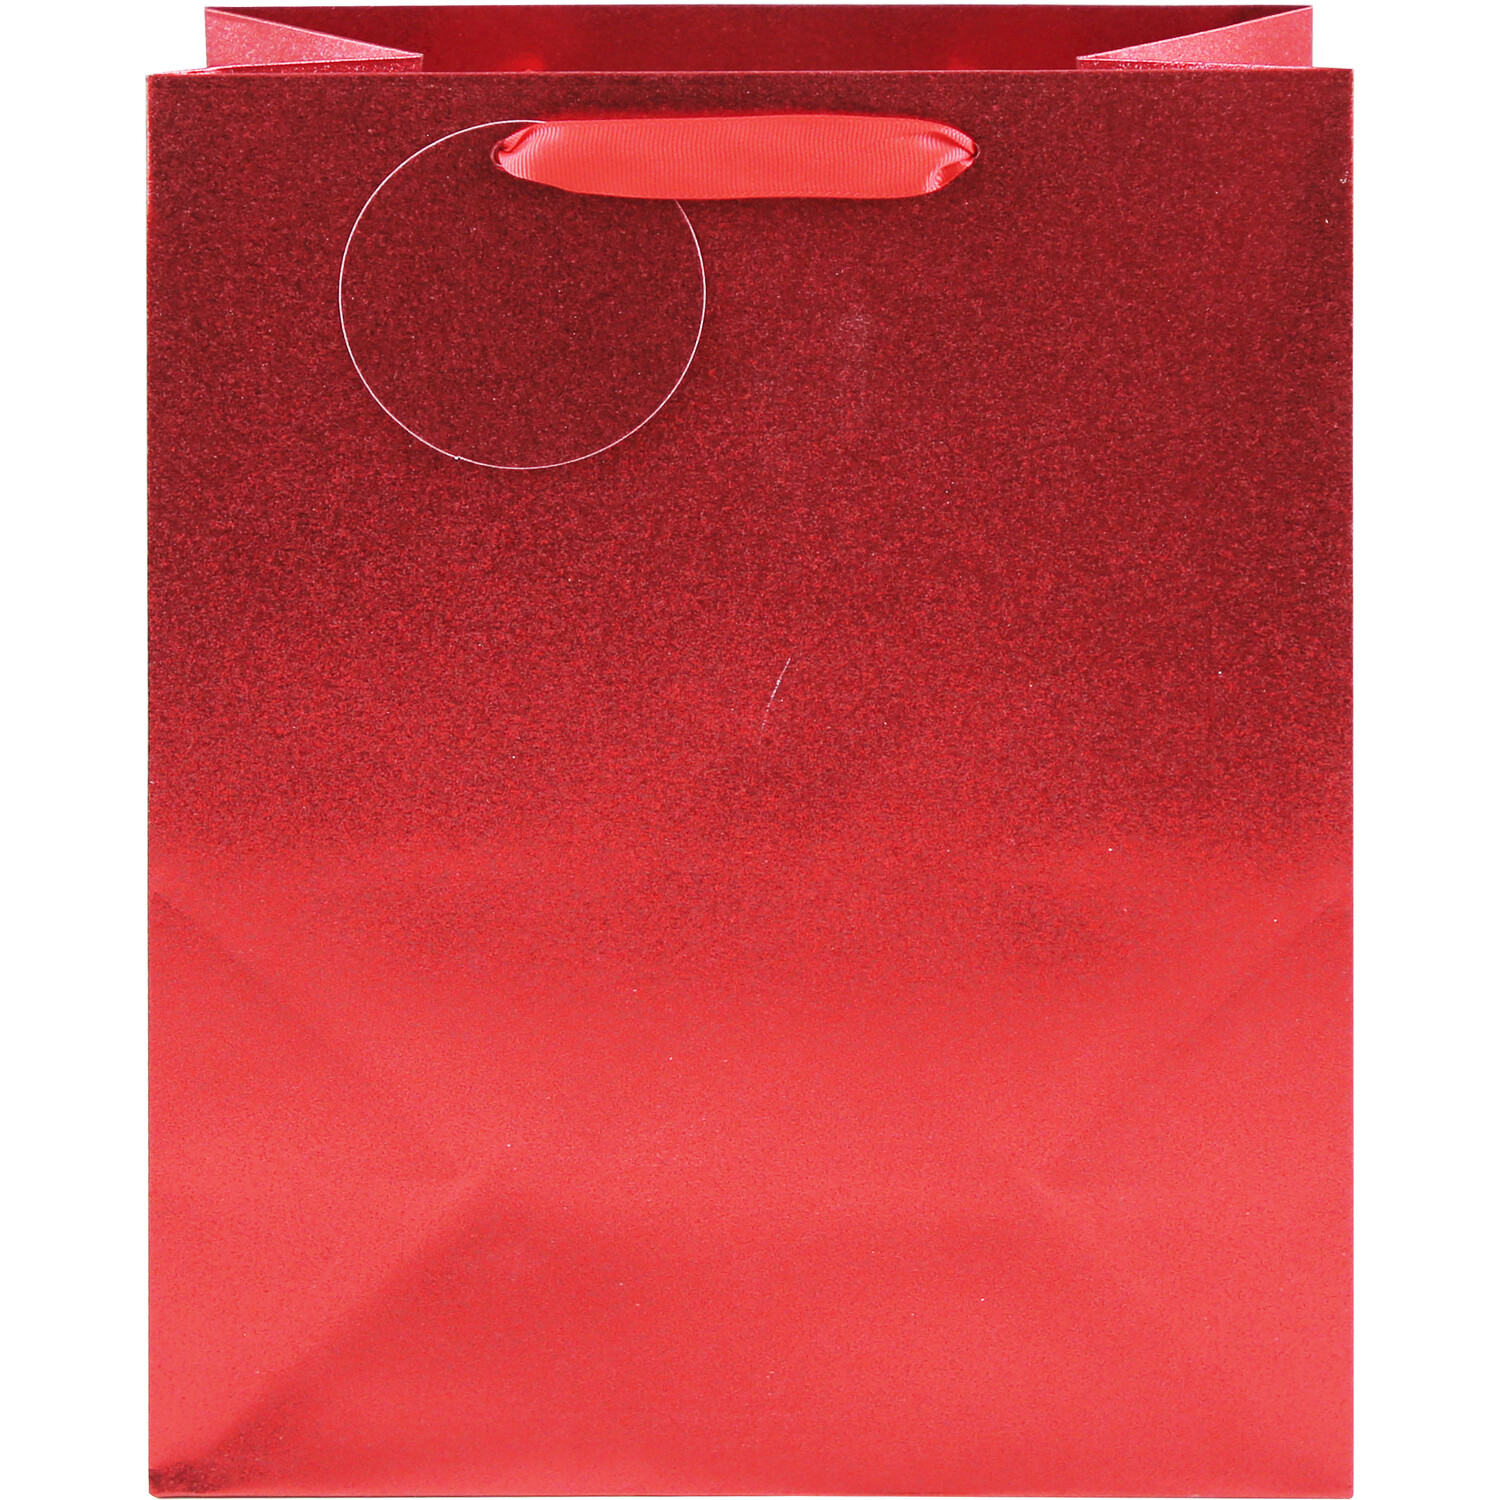 Shimmer Gift Bag - Red / Large Image 2